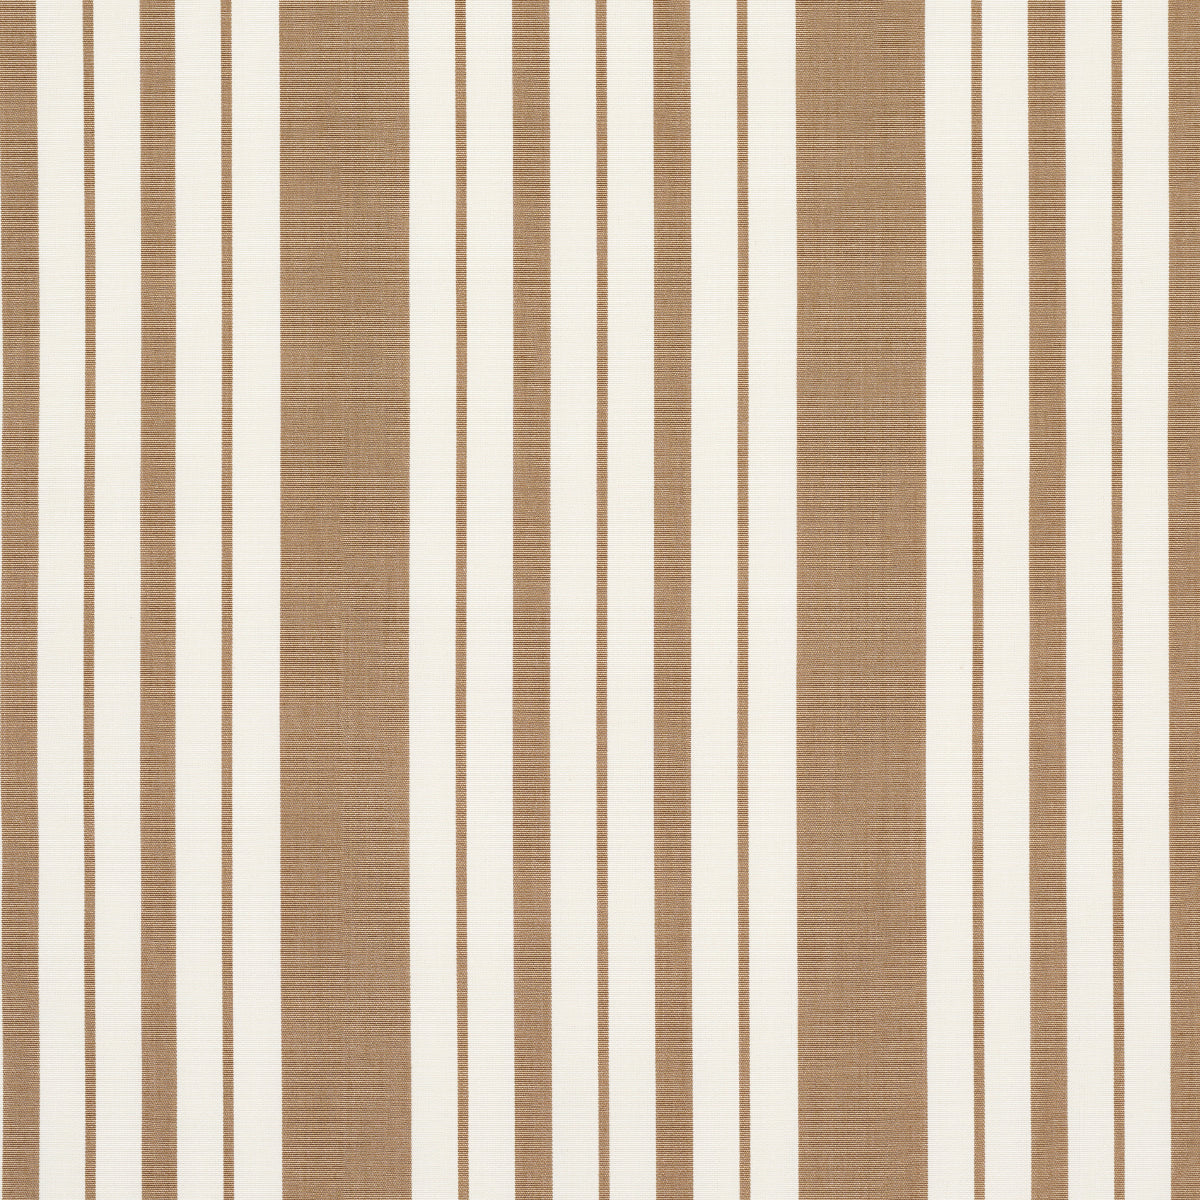 Purchase 83805 | Markie Stripe, Neutral - Schumacher Fabric